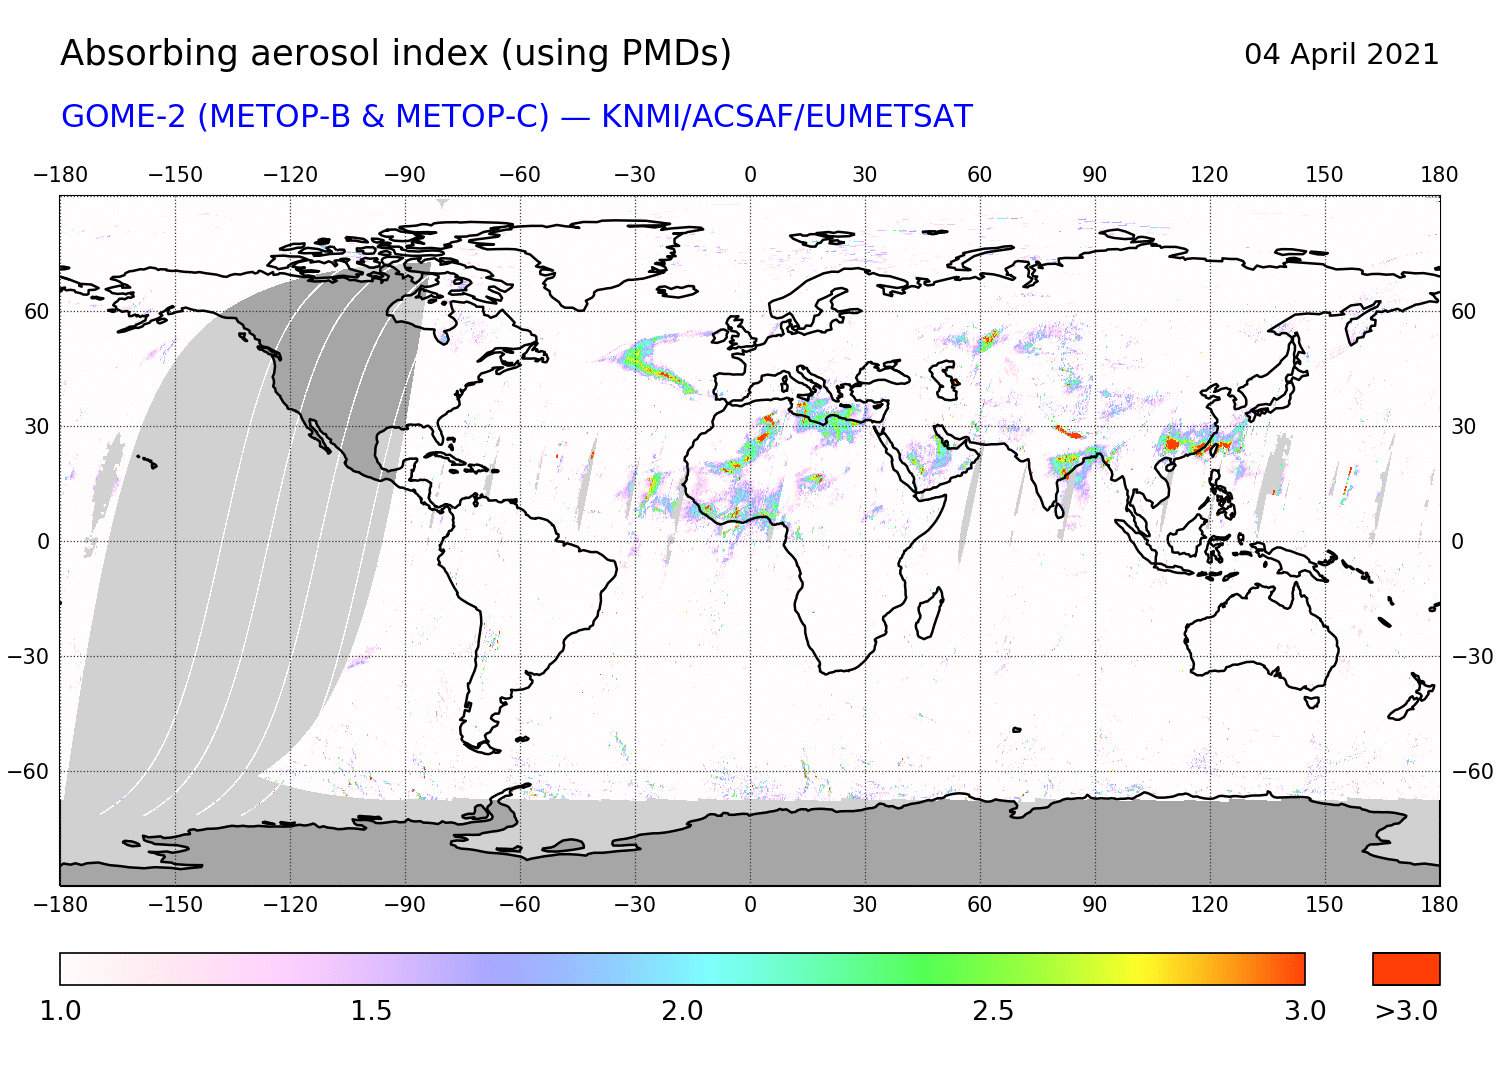 GOME-2 - Absorbing aerosol index of 04 April 2021